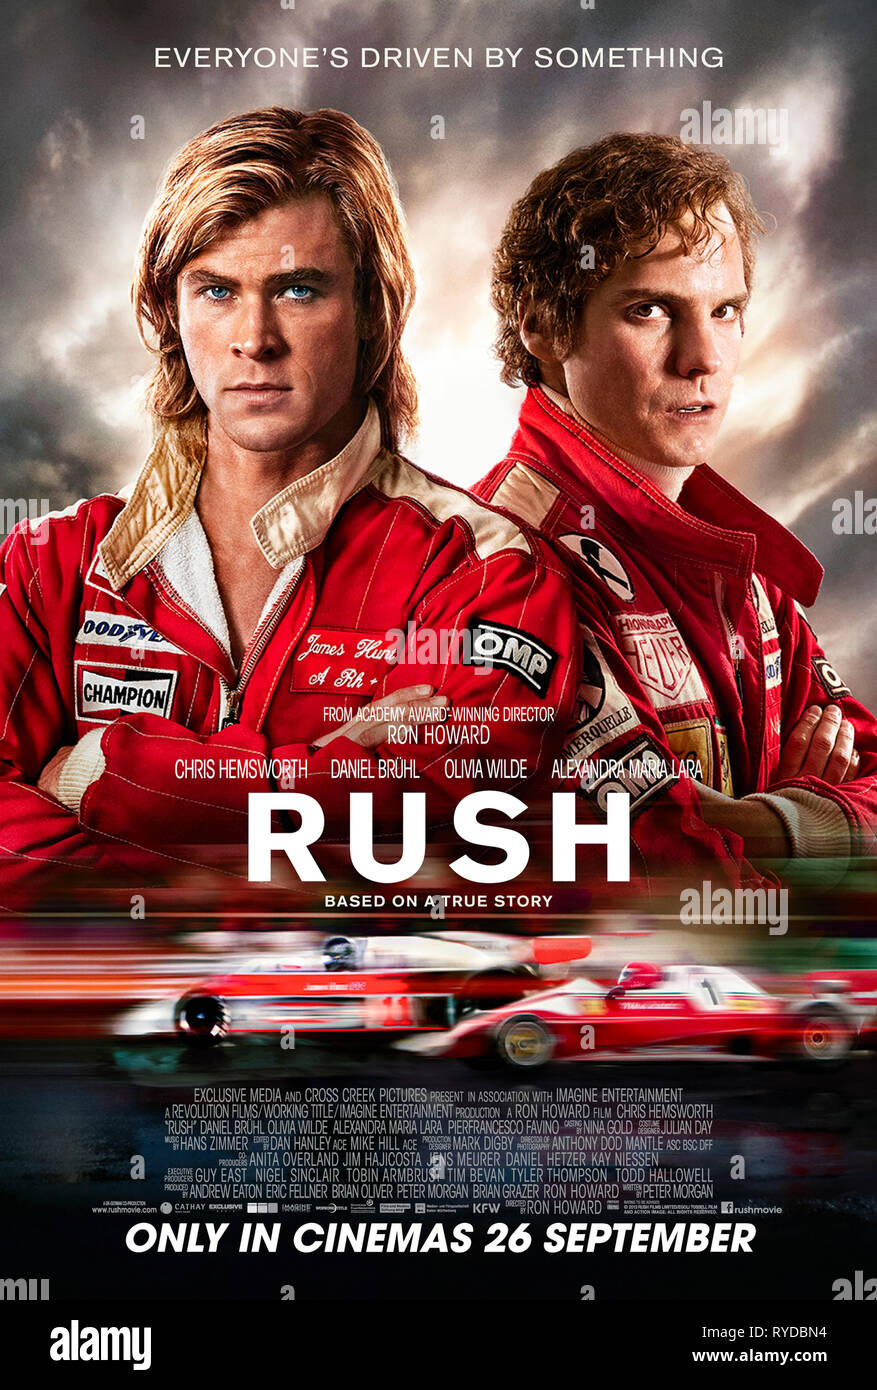 Rush (2013) von Ron Howard Regie und Hauptdarsteller Daniel Brühl, Chris Hemsworth und Olivia Wilde. Biopic über den legendären Rivalen zwischen Formel 1 riesen James Hunt und Niki Lauda. Stockfoto